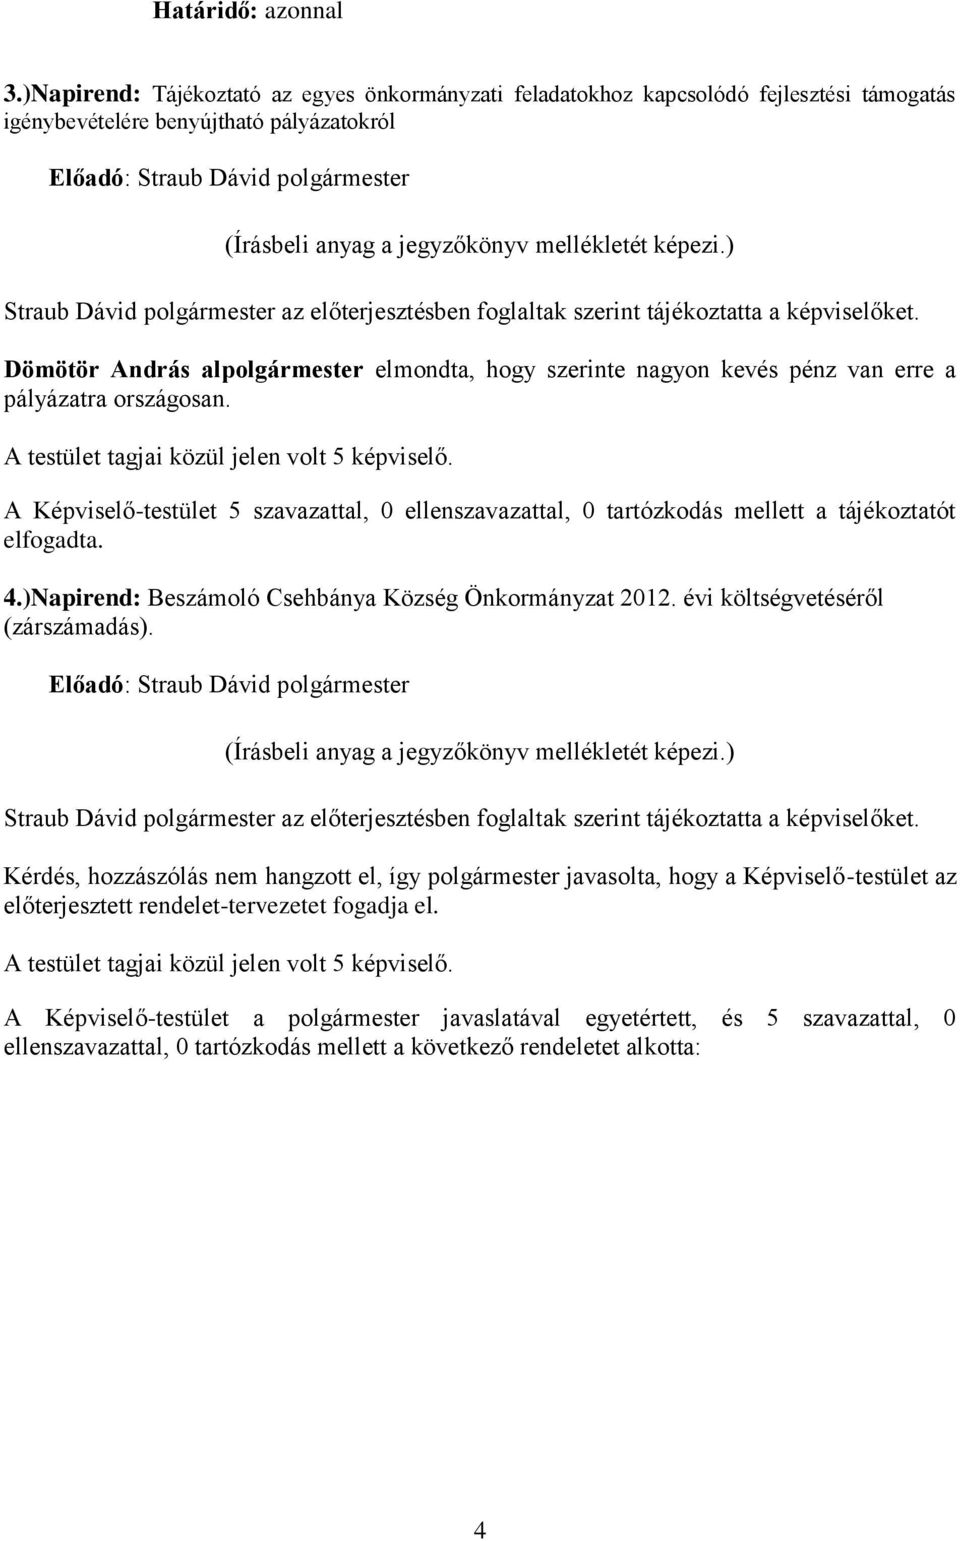 )Napirend: Beszámoló Csehbánya Község Önkormányzat 2012. évi költségvetéséről (zárszámadás).